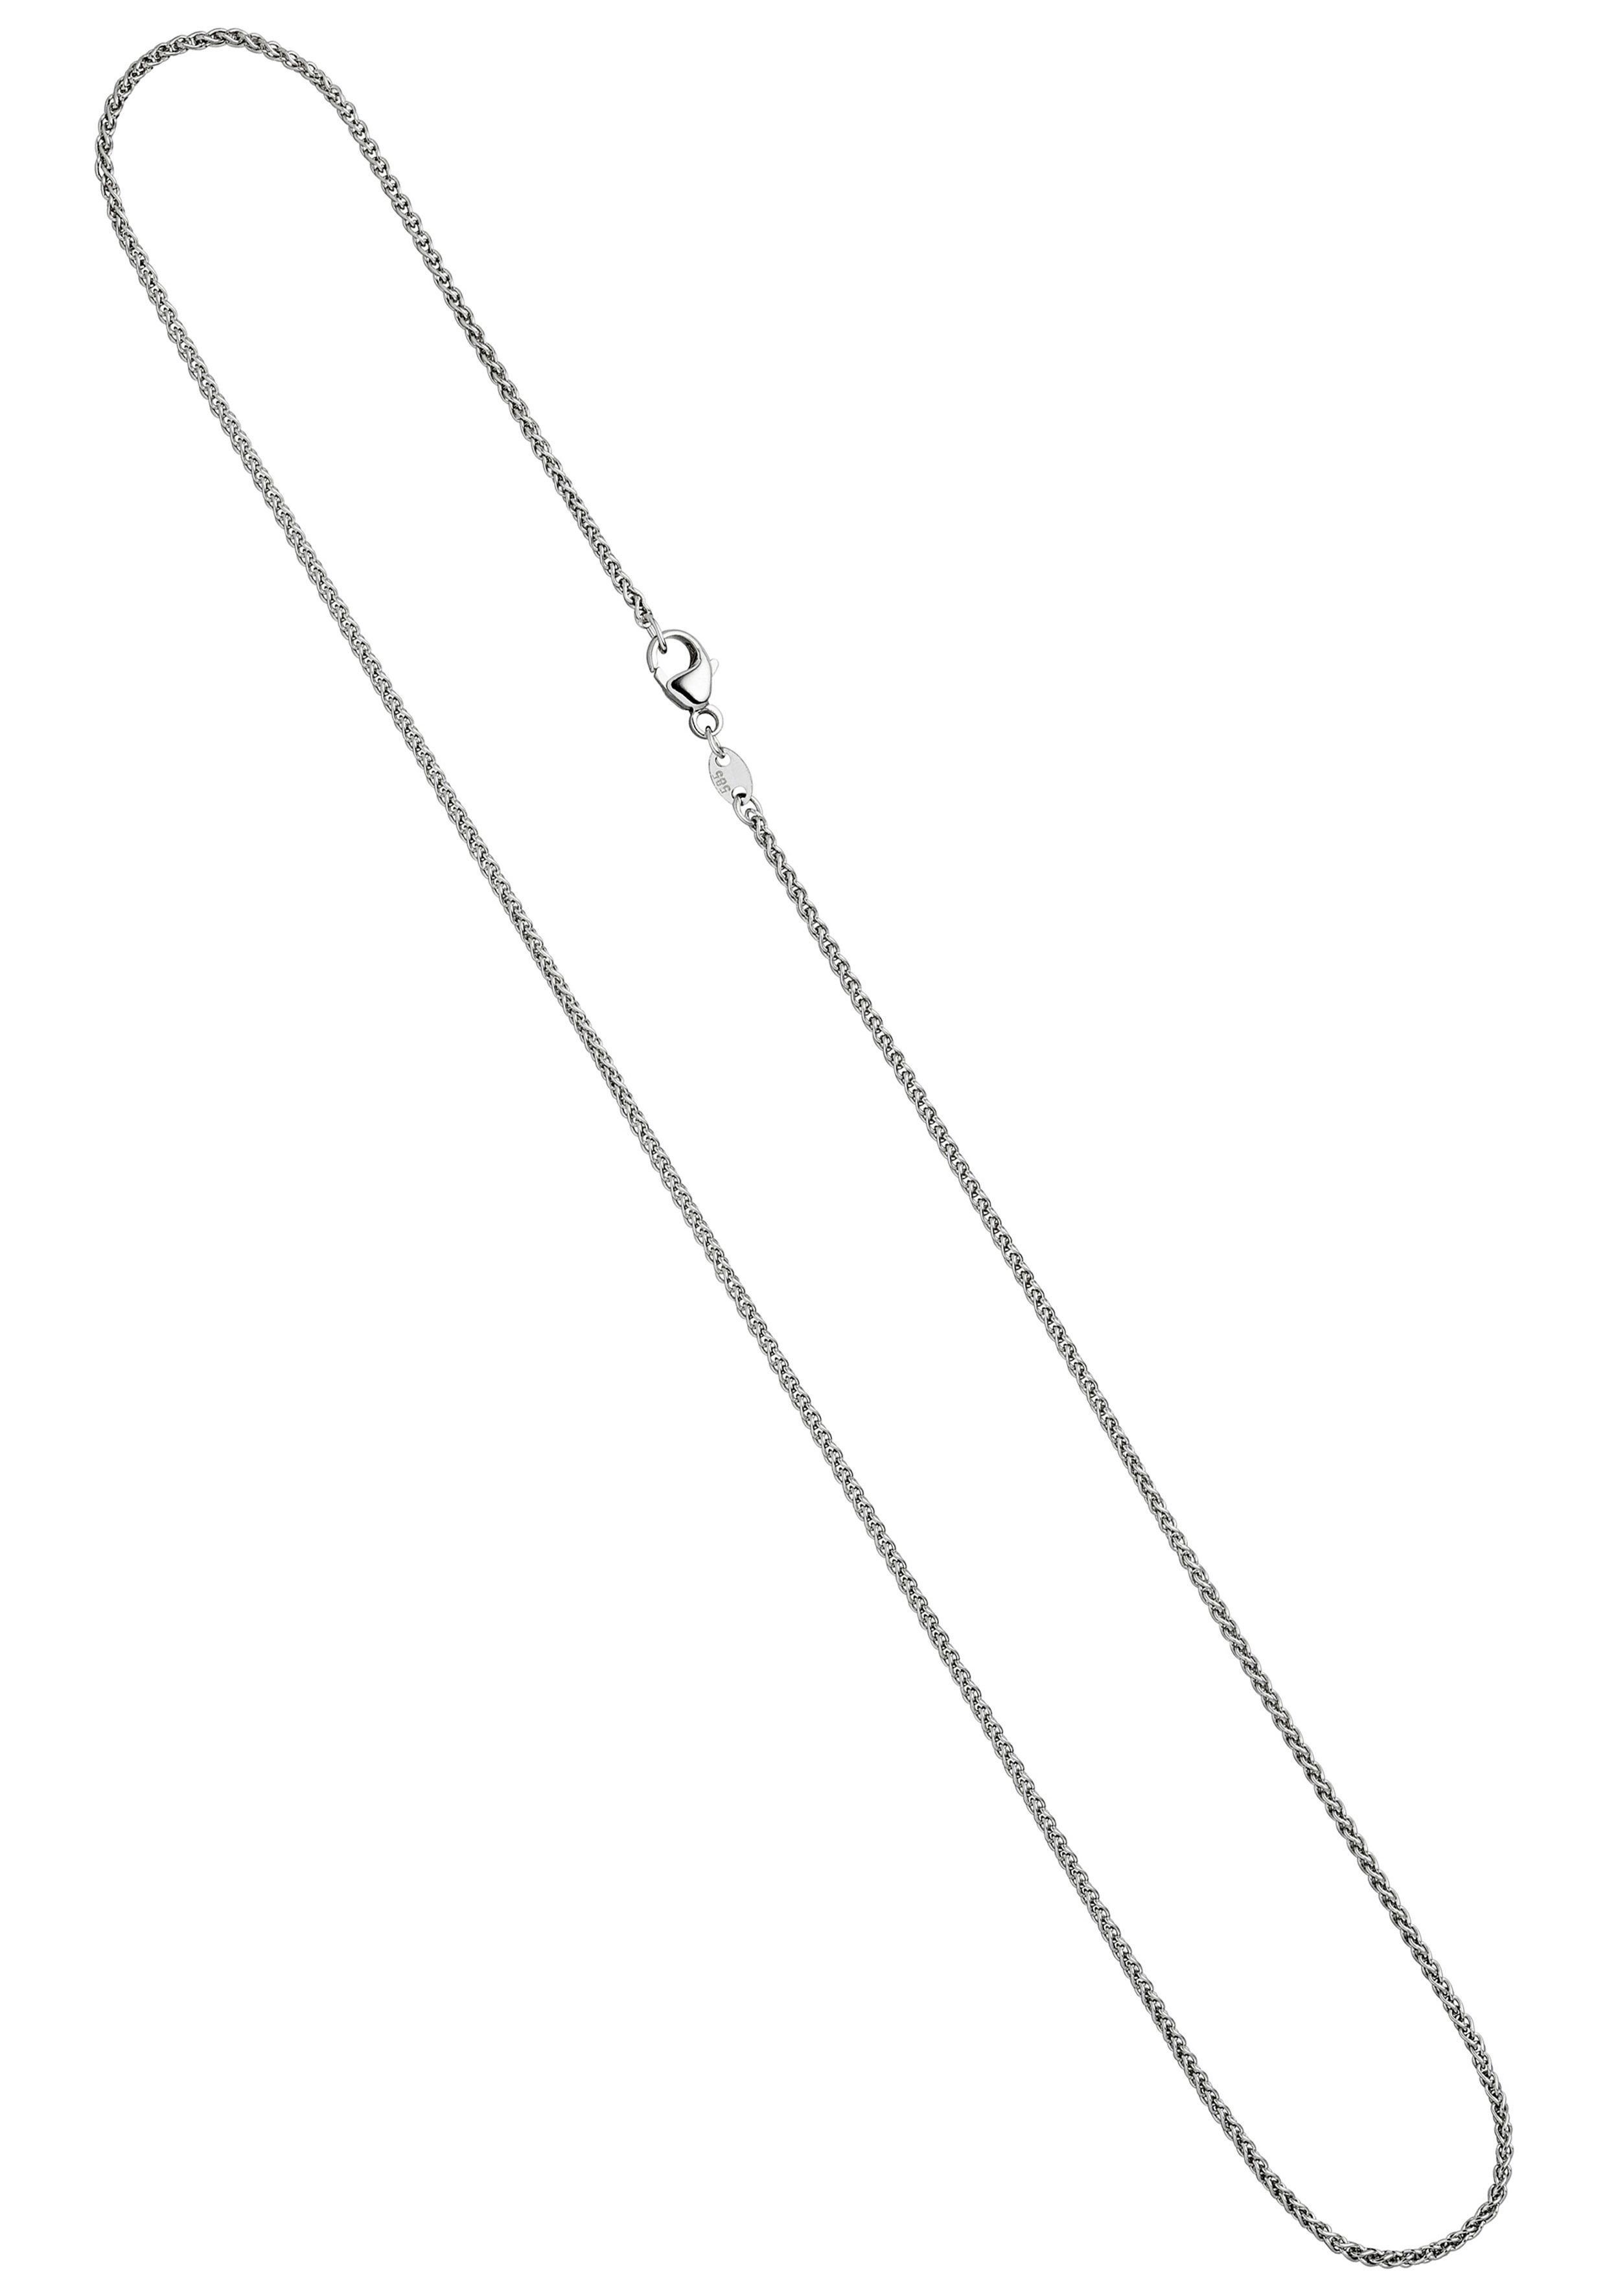 JOBO Kette ohne Anhänger Zopfkette, 585 Weißgold 42 cm 1,2 mm